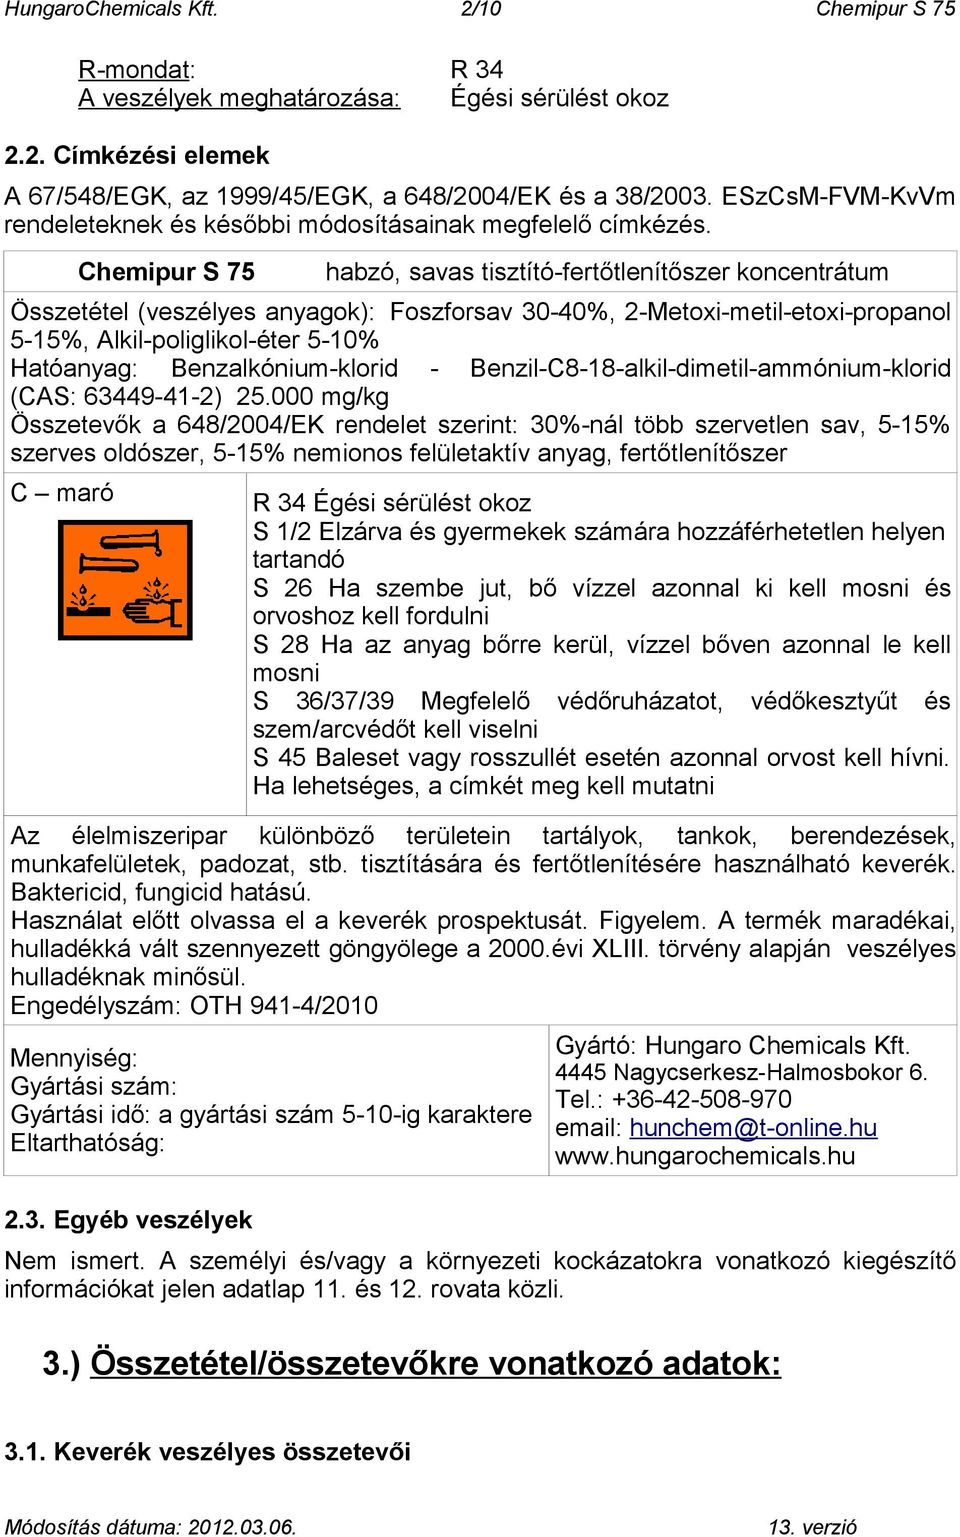 Chemipur S 75 habzó, savas tisztító-fertőtlenítőszer koncentrátum Összetétel (veszélyes anyagok): Foszforsav 30-40%, 2-Metoxi-metil-etoxi-propanol 5-15%, Alkil-poliglikol-éter 5-10% Hatóanyag: